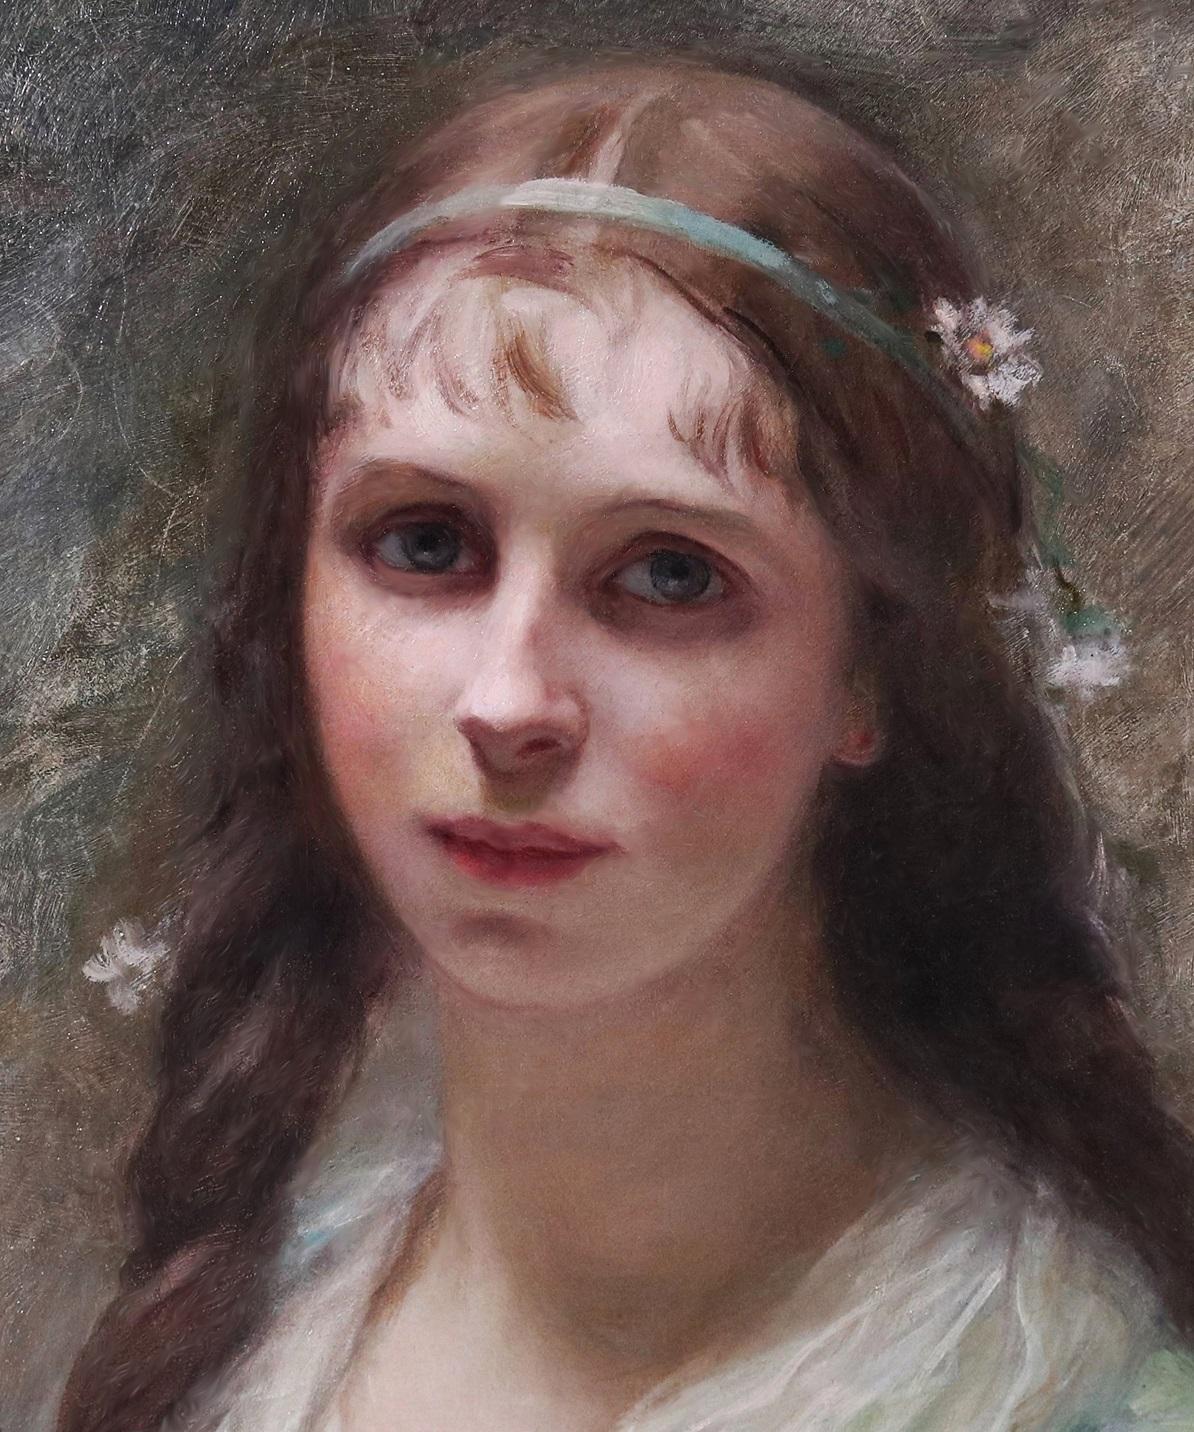 La Couronne de Marguerite' par Édouard-Louis-Lucien Cabane (1857-1942). 

Le tableau - qui représente une jeune beauté française portant une couronne de marguerites - est signé par l'artiste et daté de 1915. Elle est suspendue dans un cadre en métal